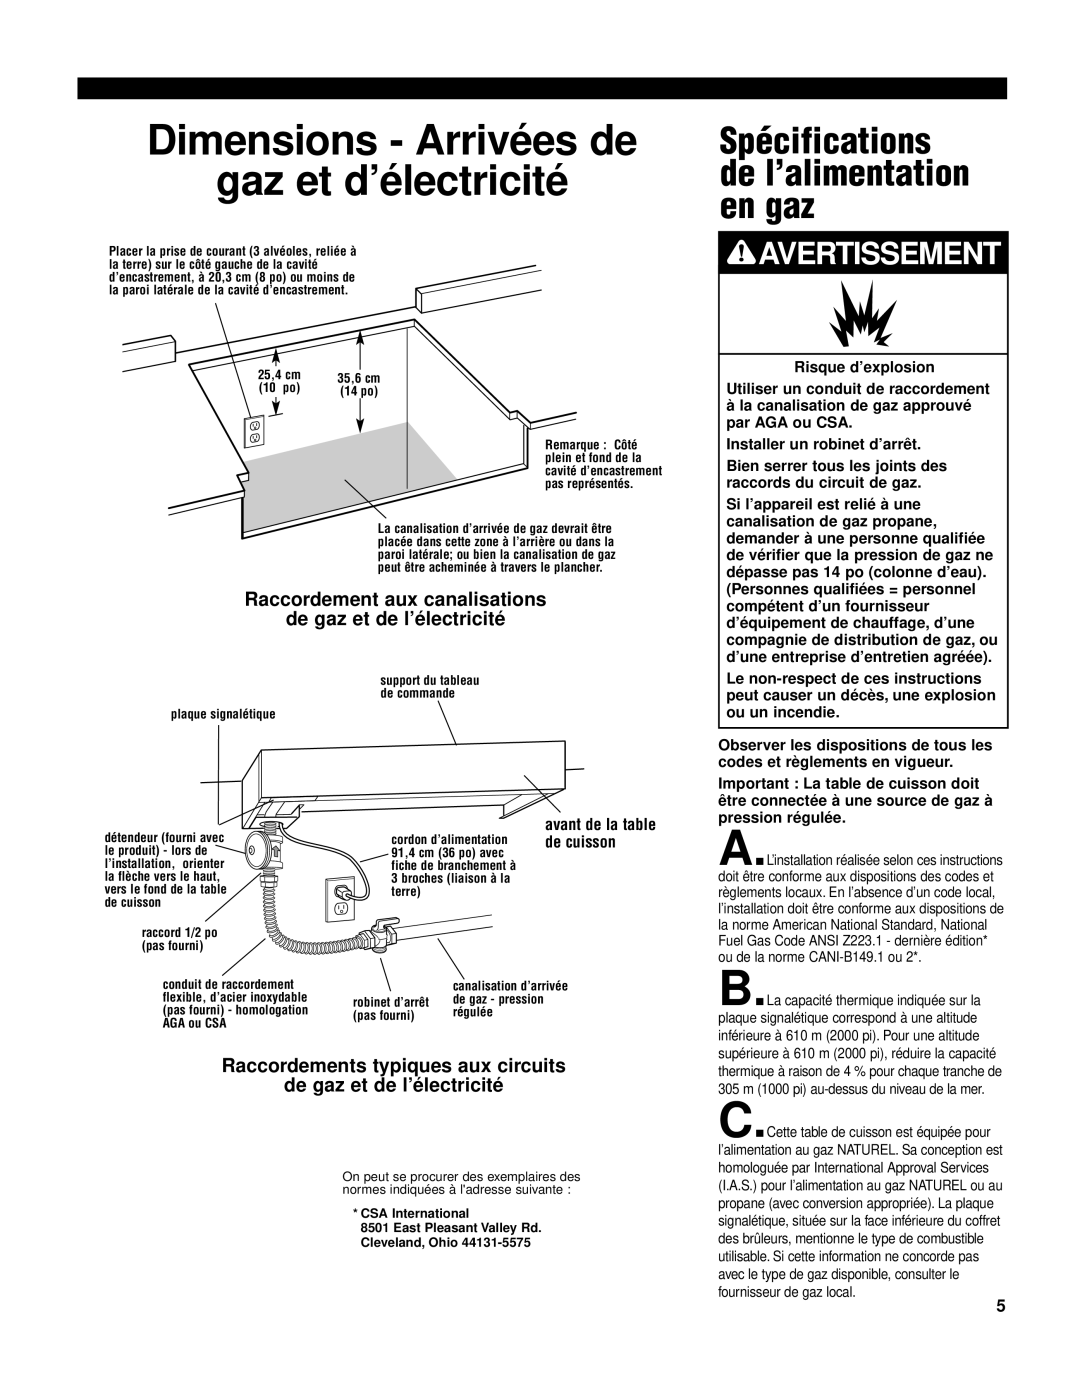 KitchenAid KGCP462K Spécifications de l’alimentation en gaz, Dimensions - Arrivées de gaz et d’électricité, Avertissement 